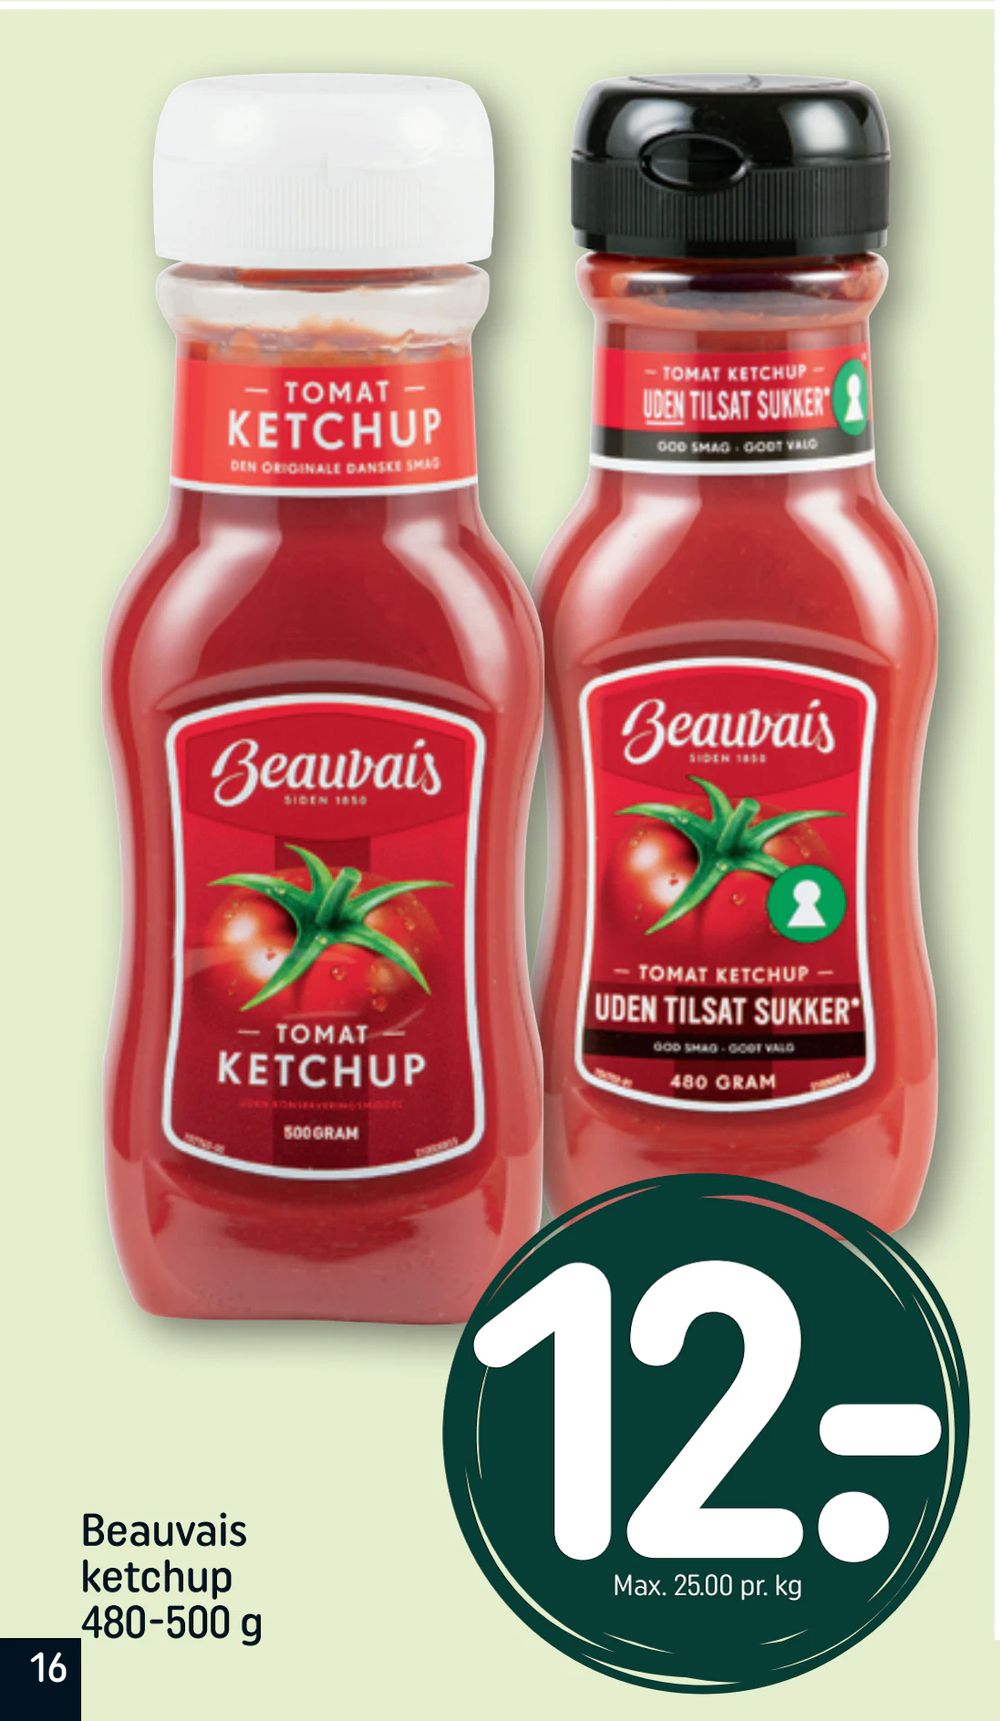 Tilbud på Beauvais ketchup 480-500 g fra REMA 1000 til 12 kr.